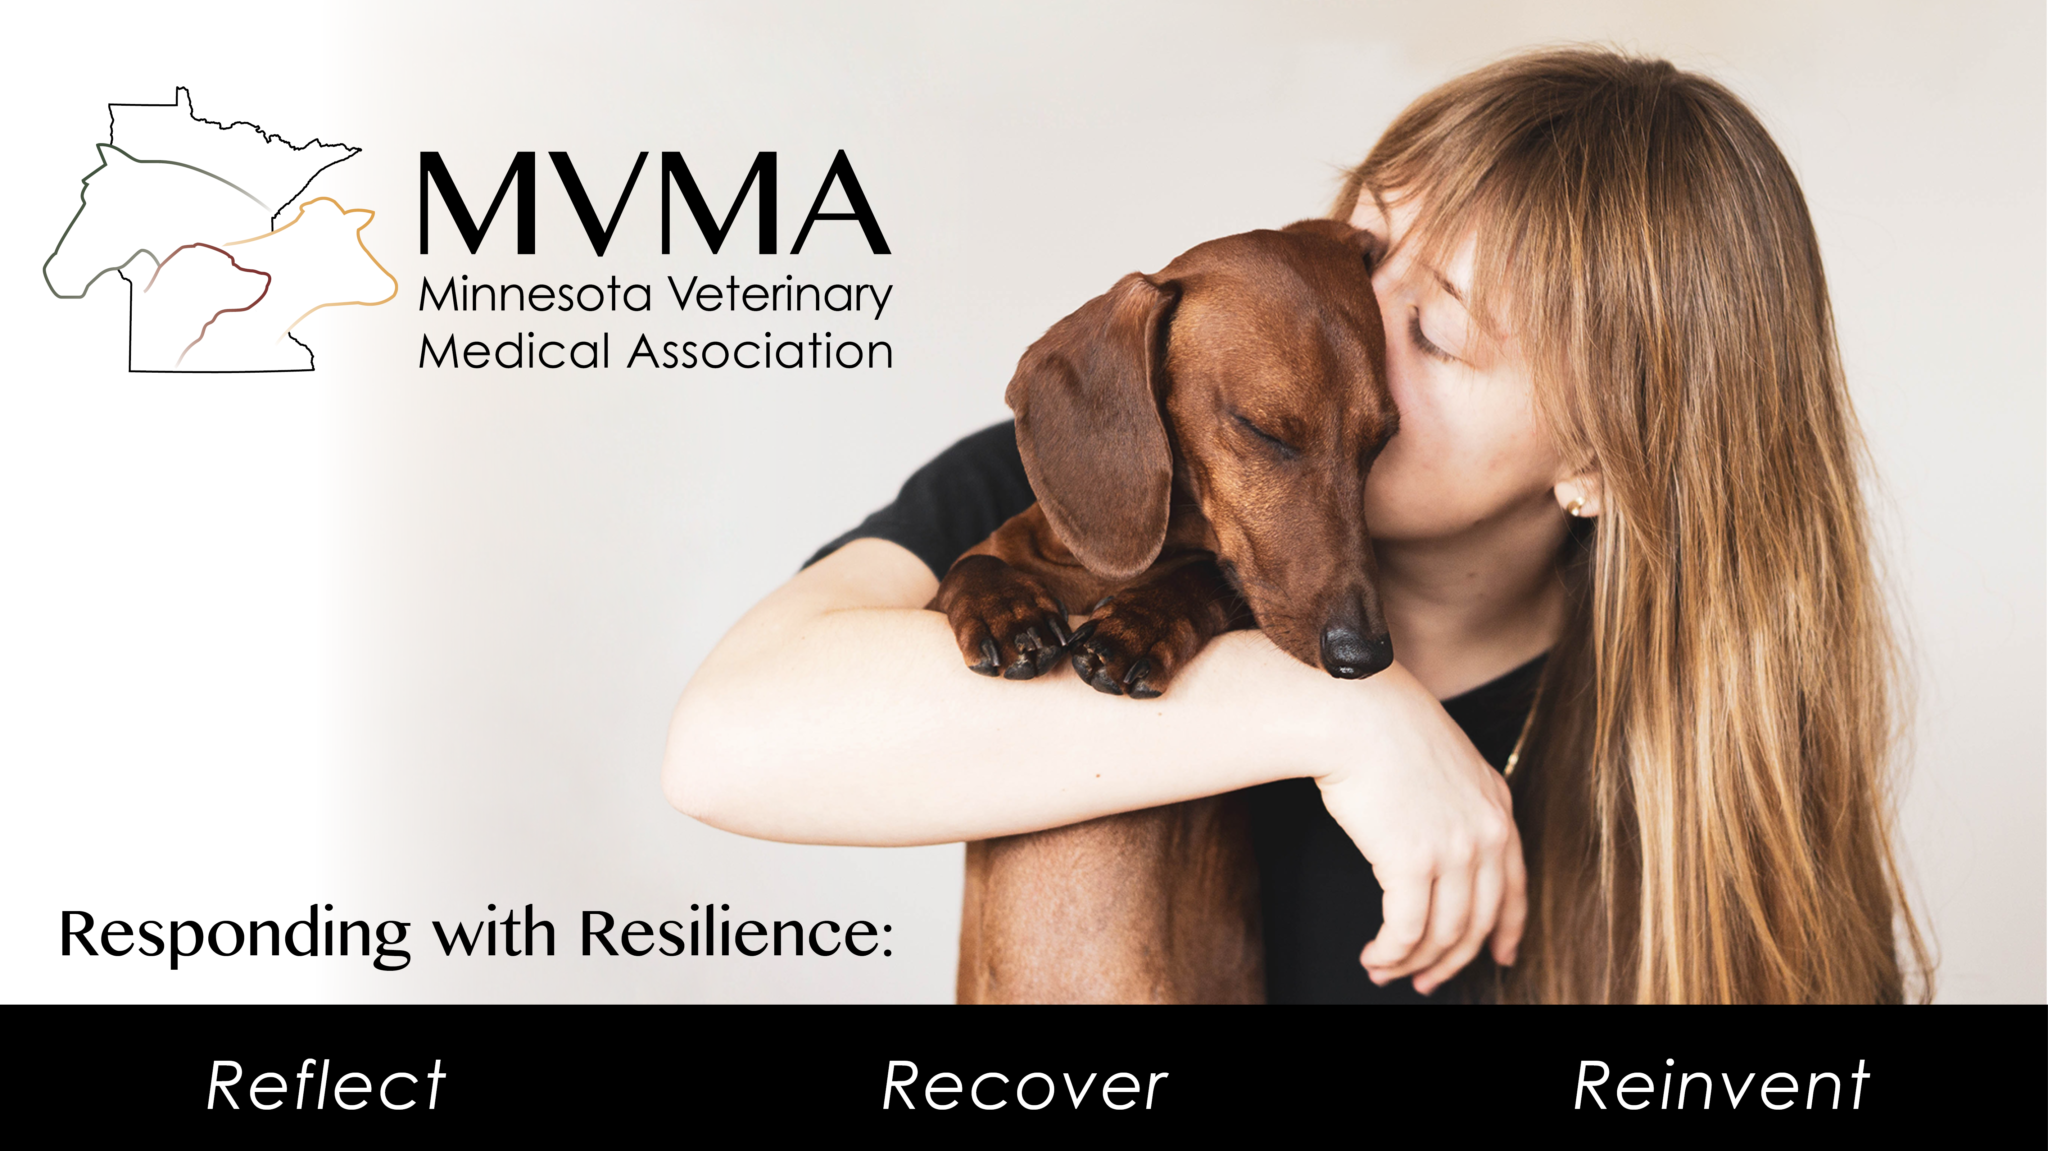 MVMA Annual Meeting